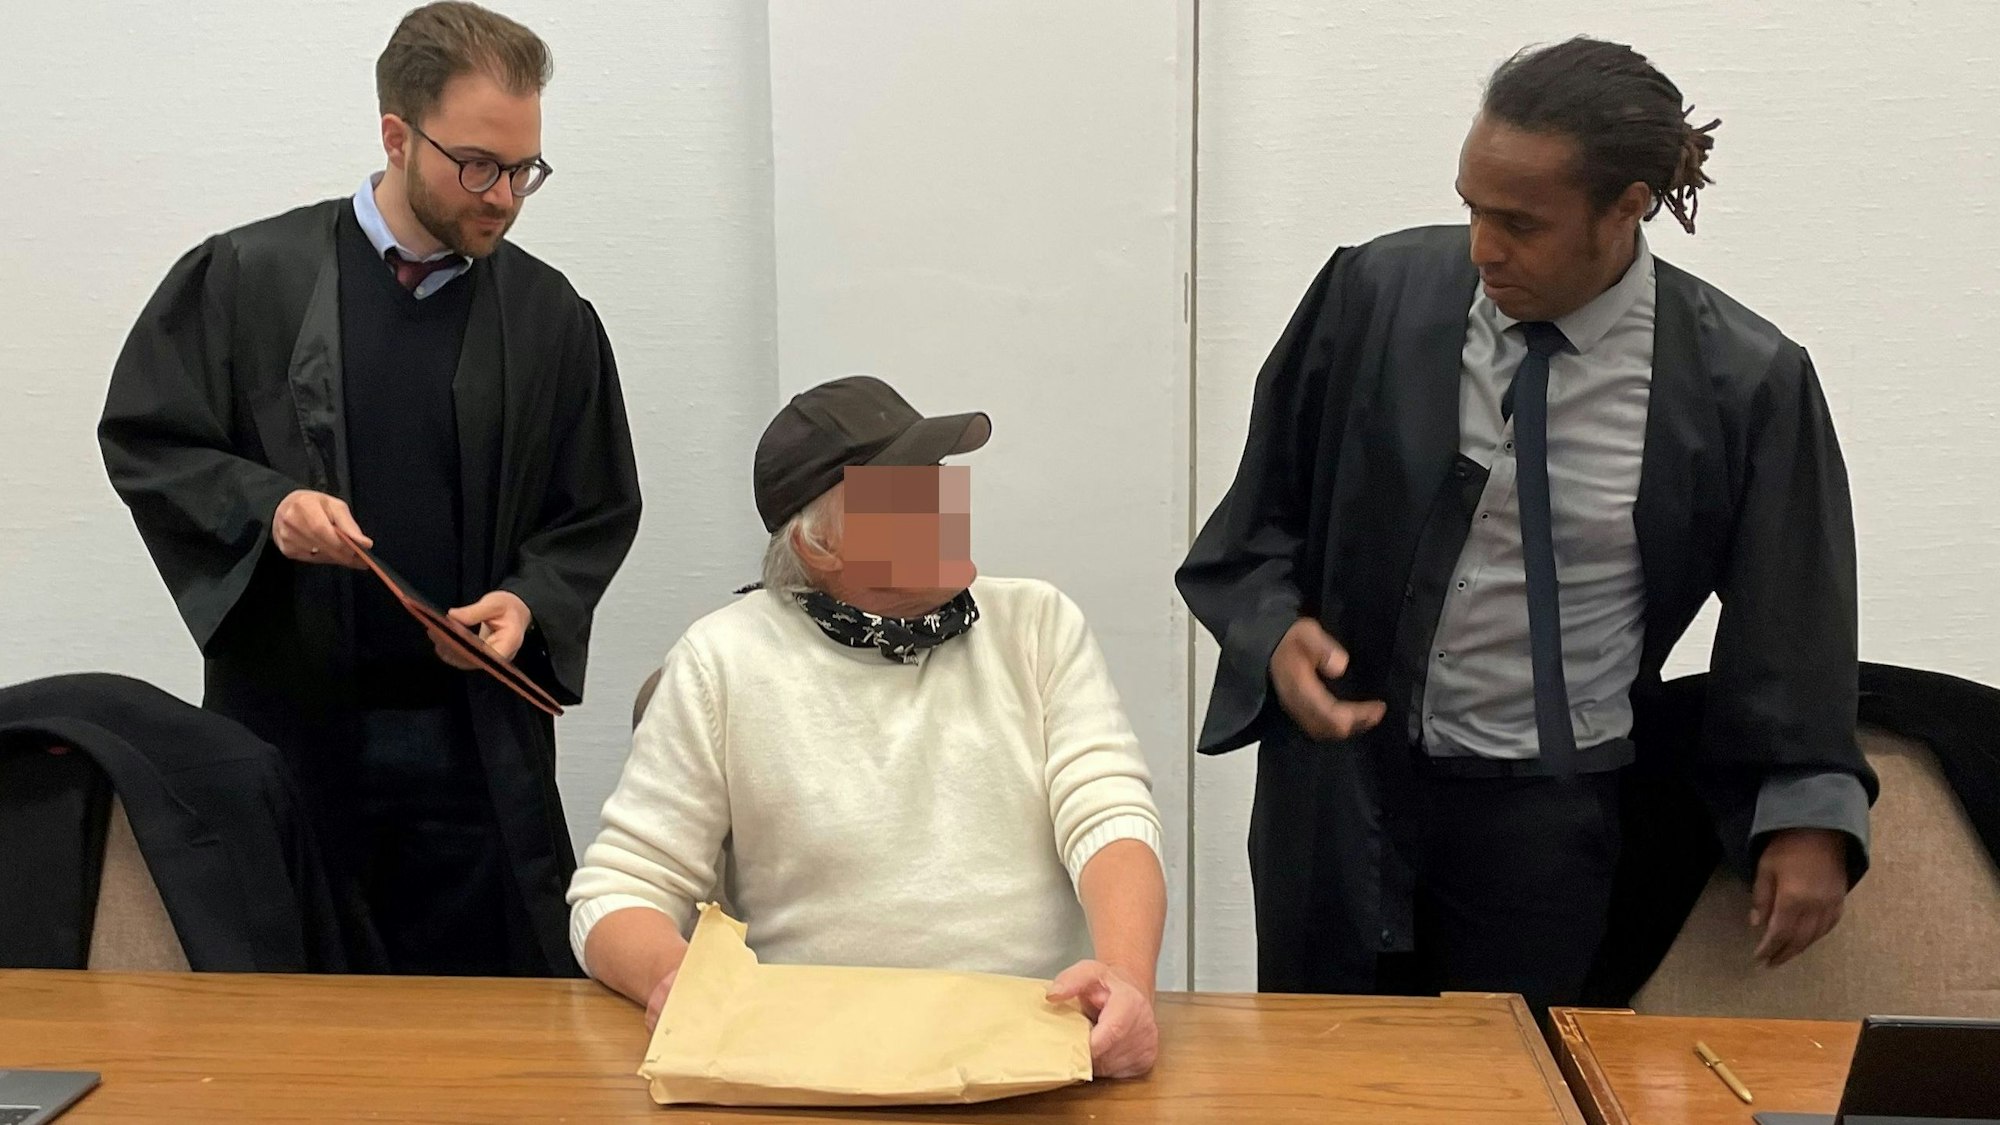 Ein Mann mit Basecap sitzt auf der Anklagebank, rechts und links von ihm steht jeweils ein Anwalt.